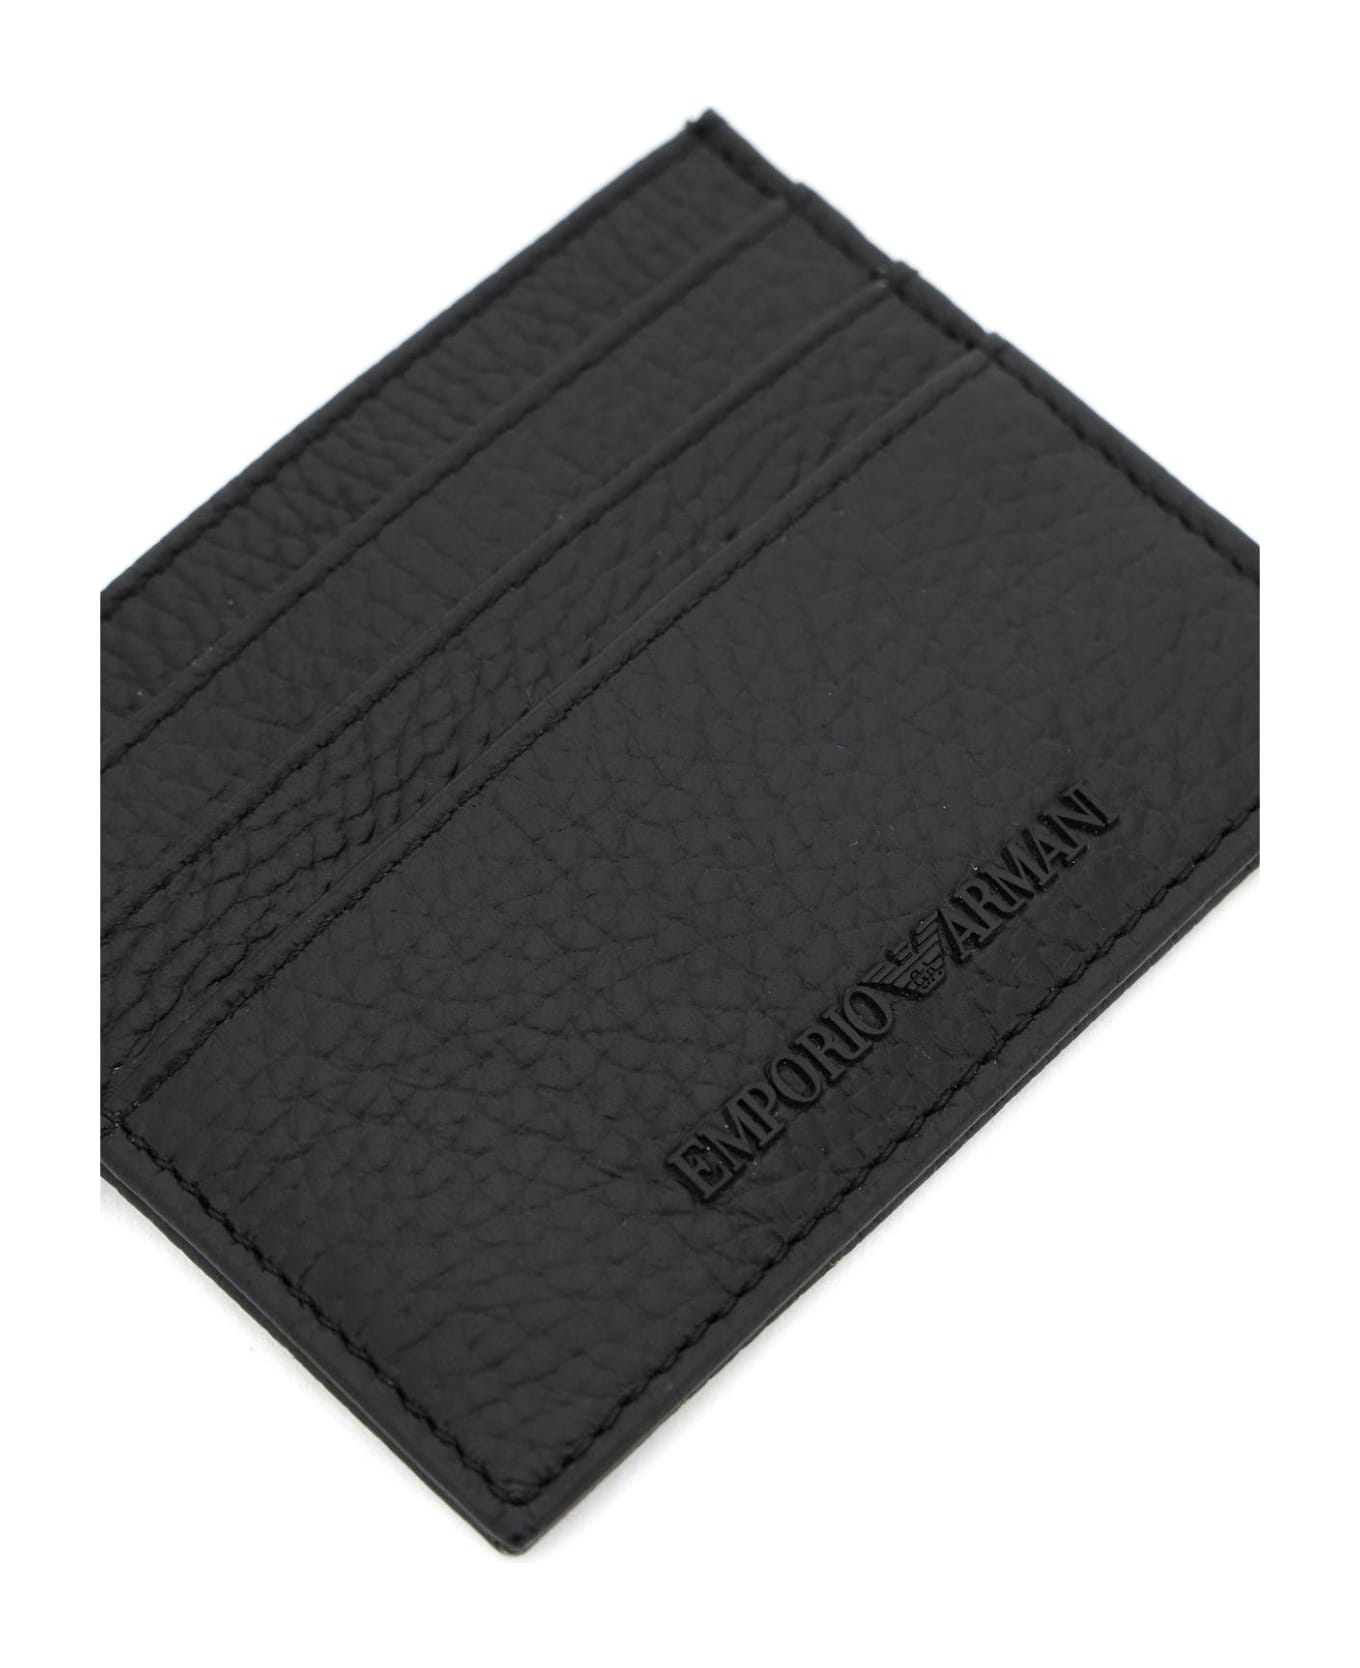 Emporio Armani Grained Leather Cardholder - Black 財布